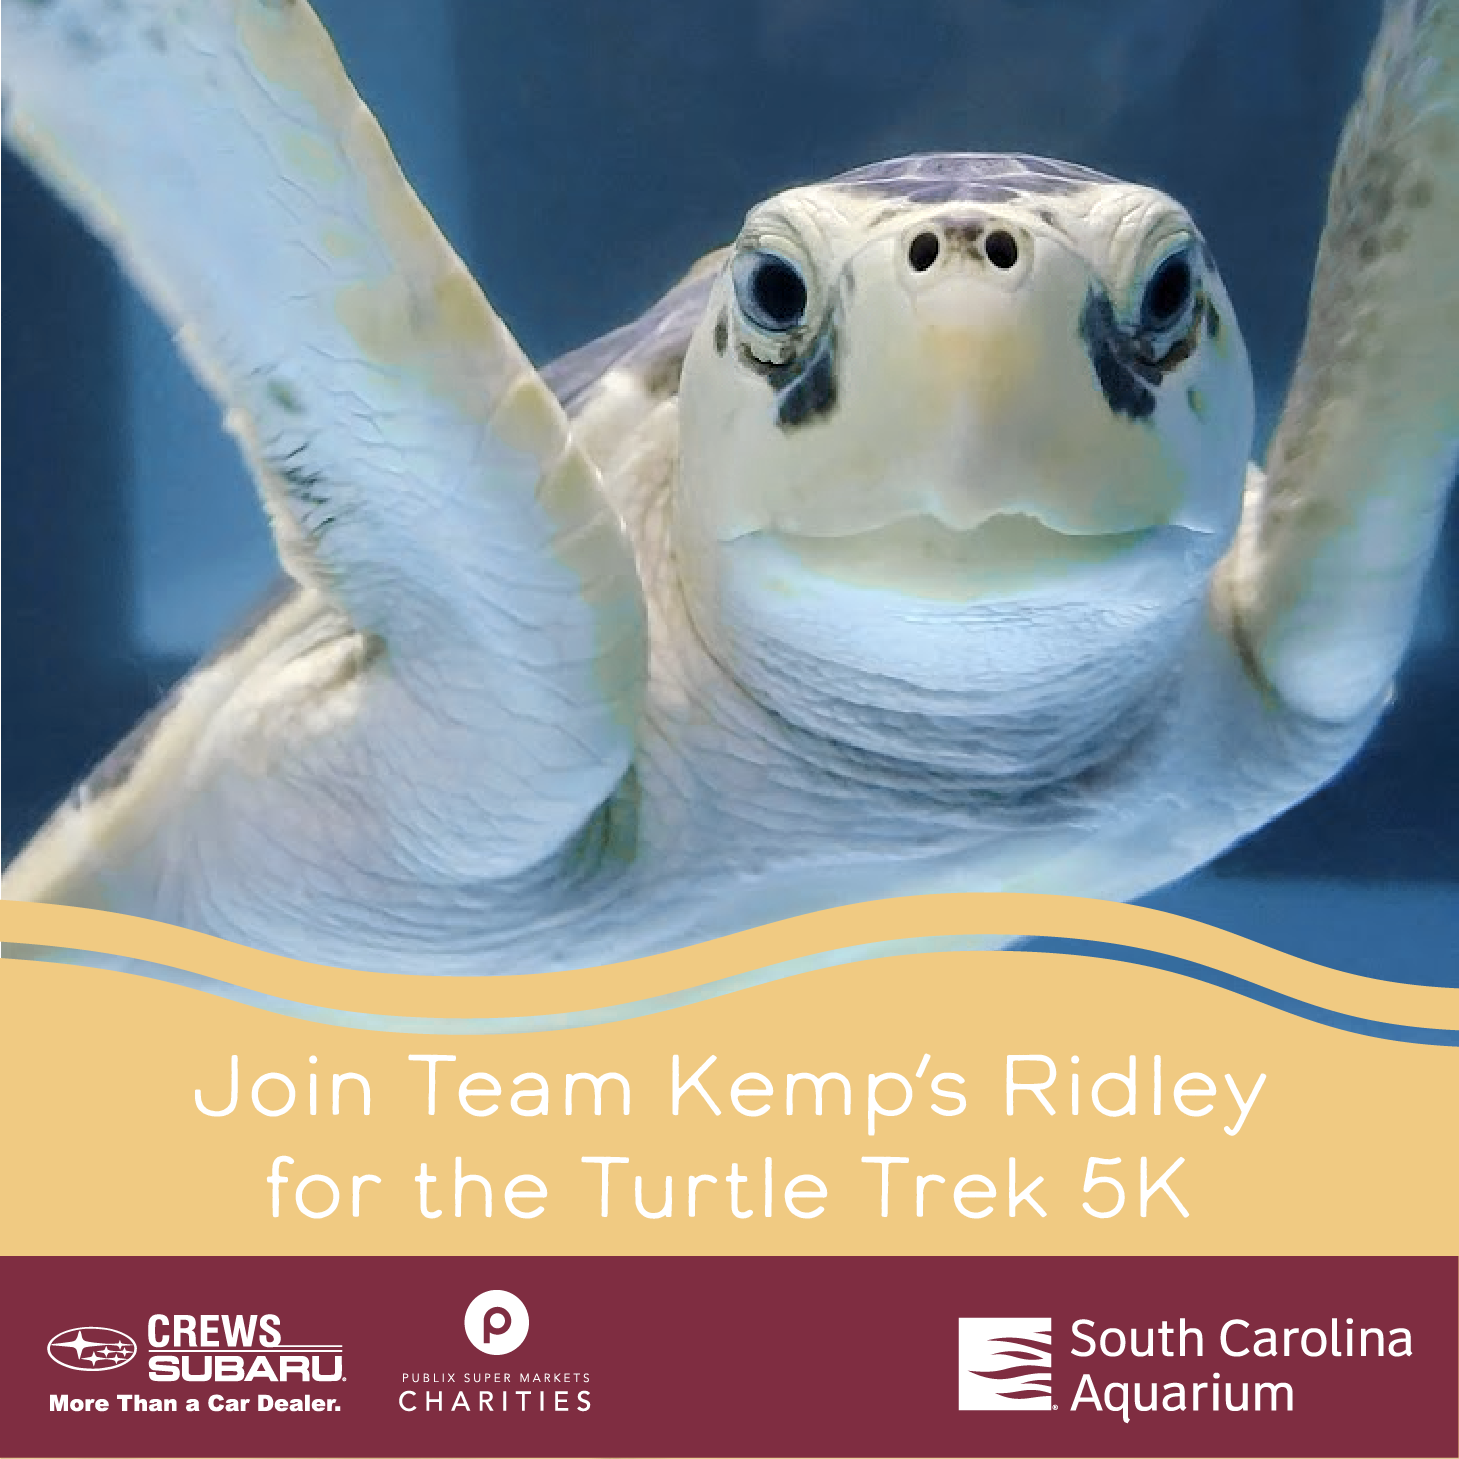 Turtle Trek Toolkit South Carolina Aquarium